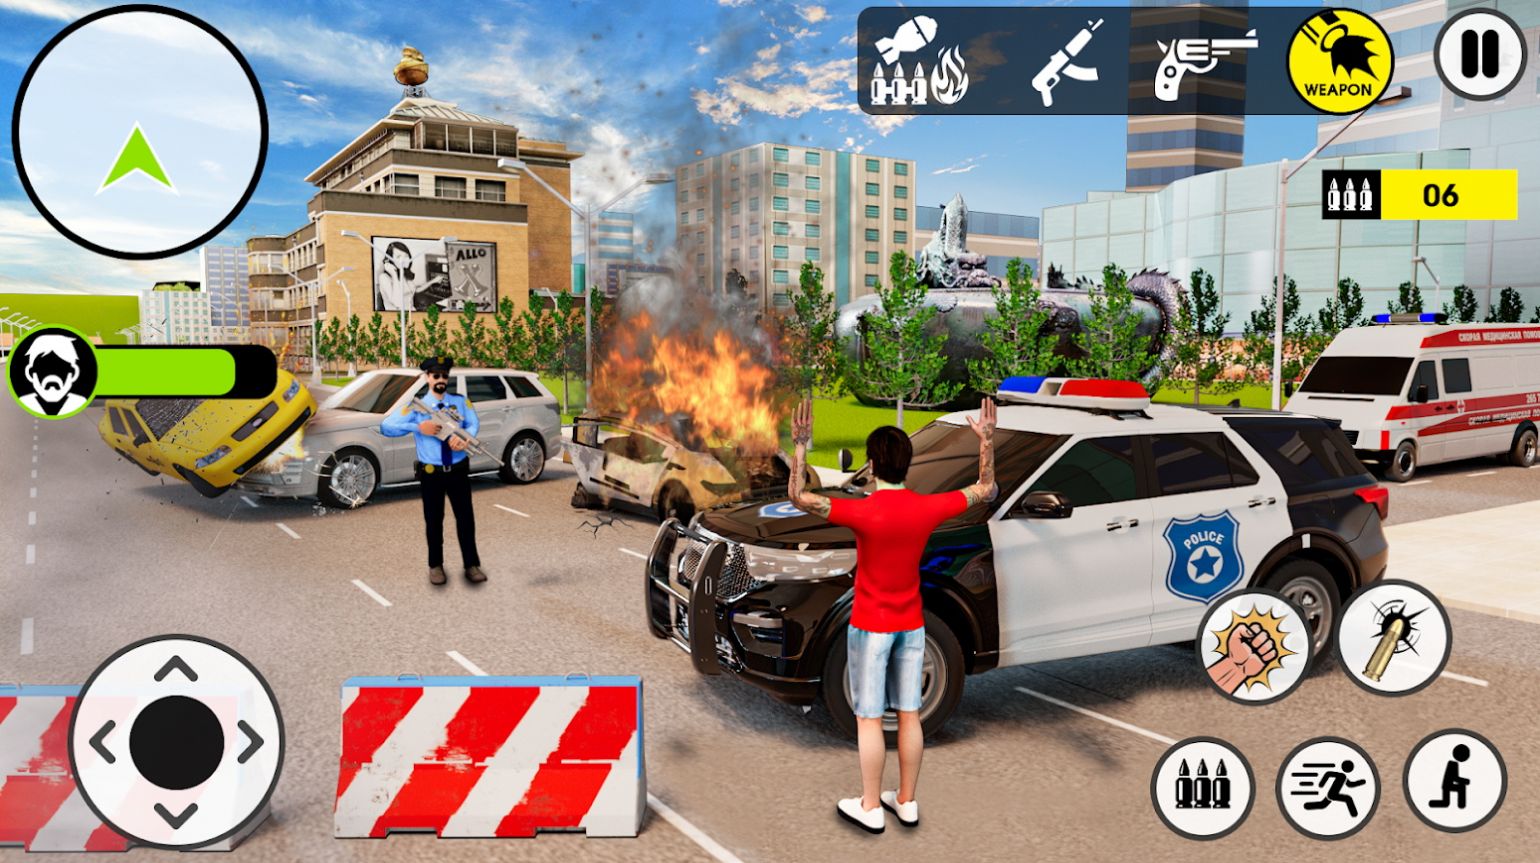 战术小队警察模拟器游戏官方版截图2: